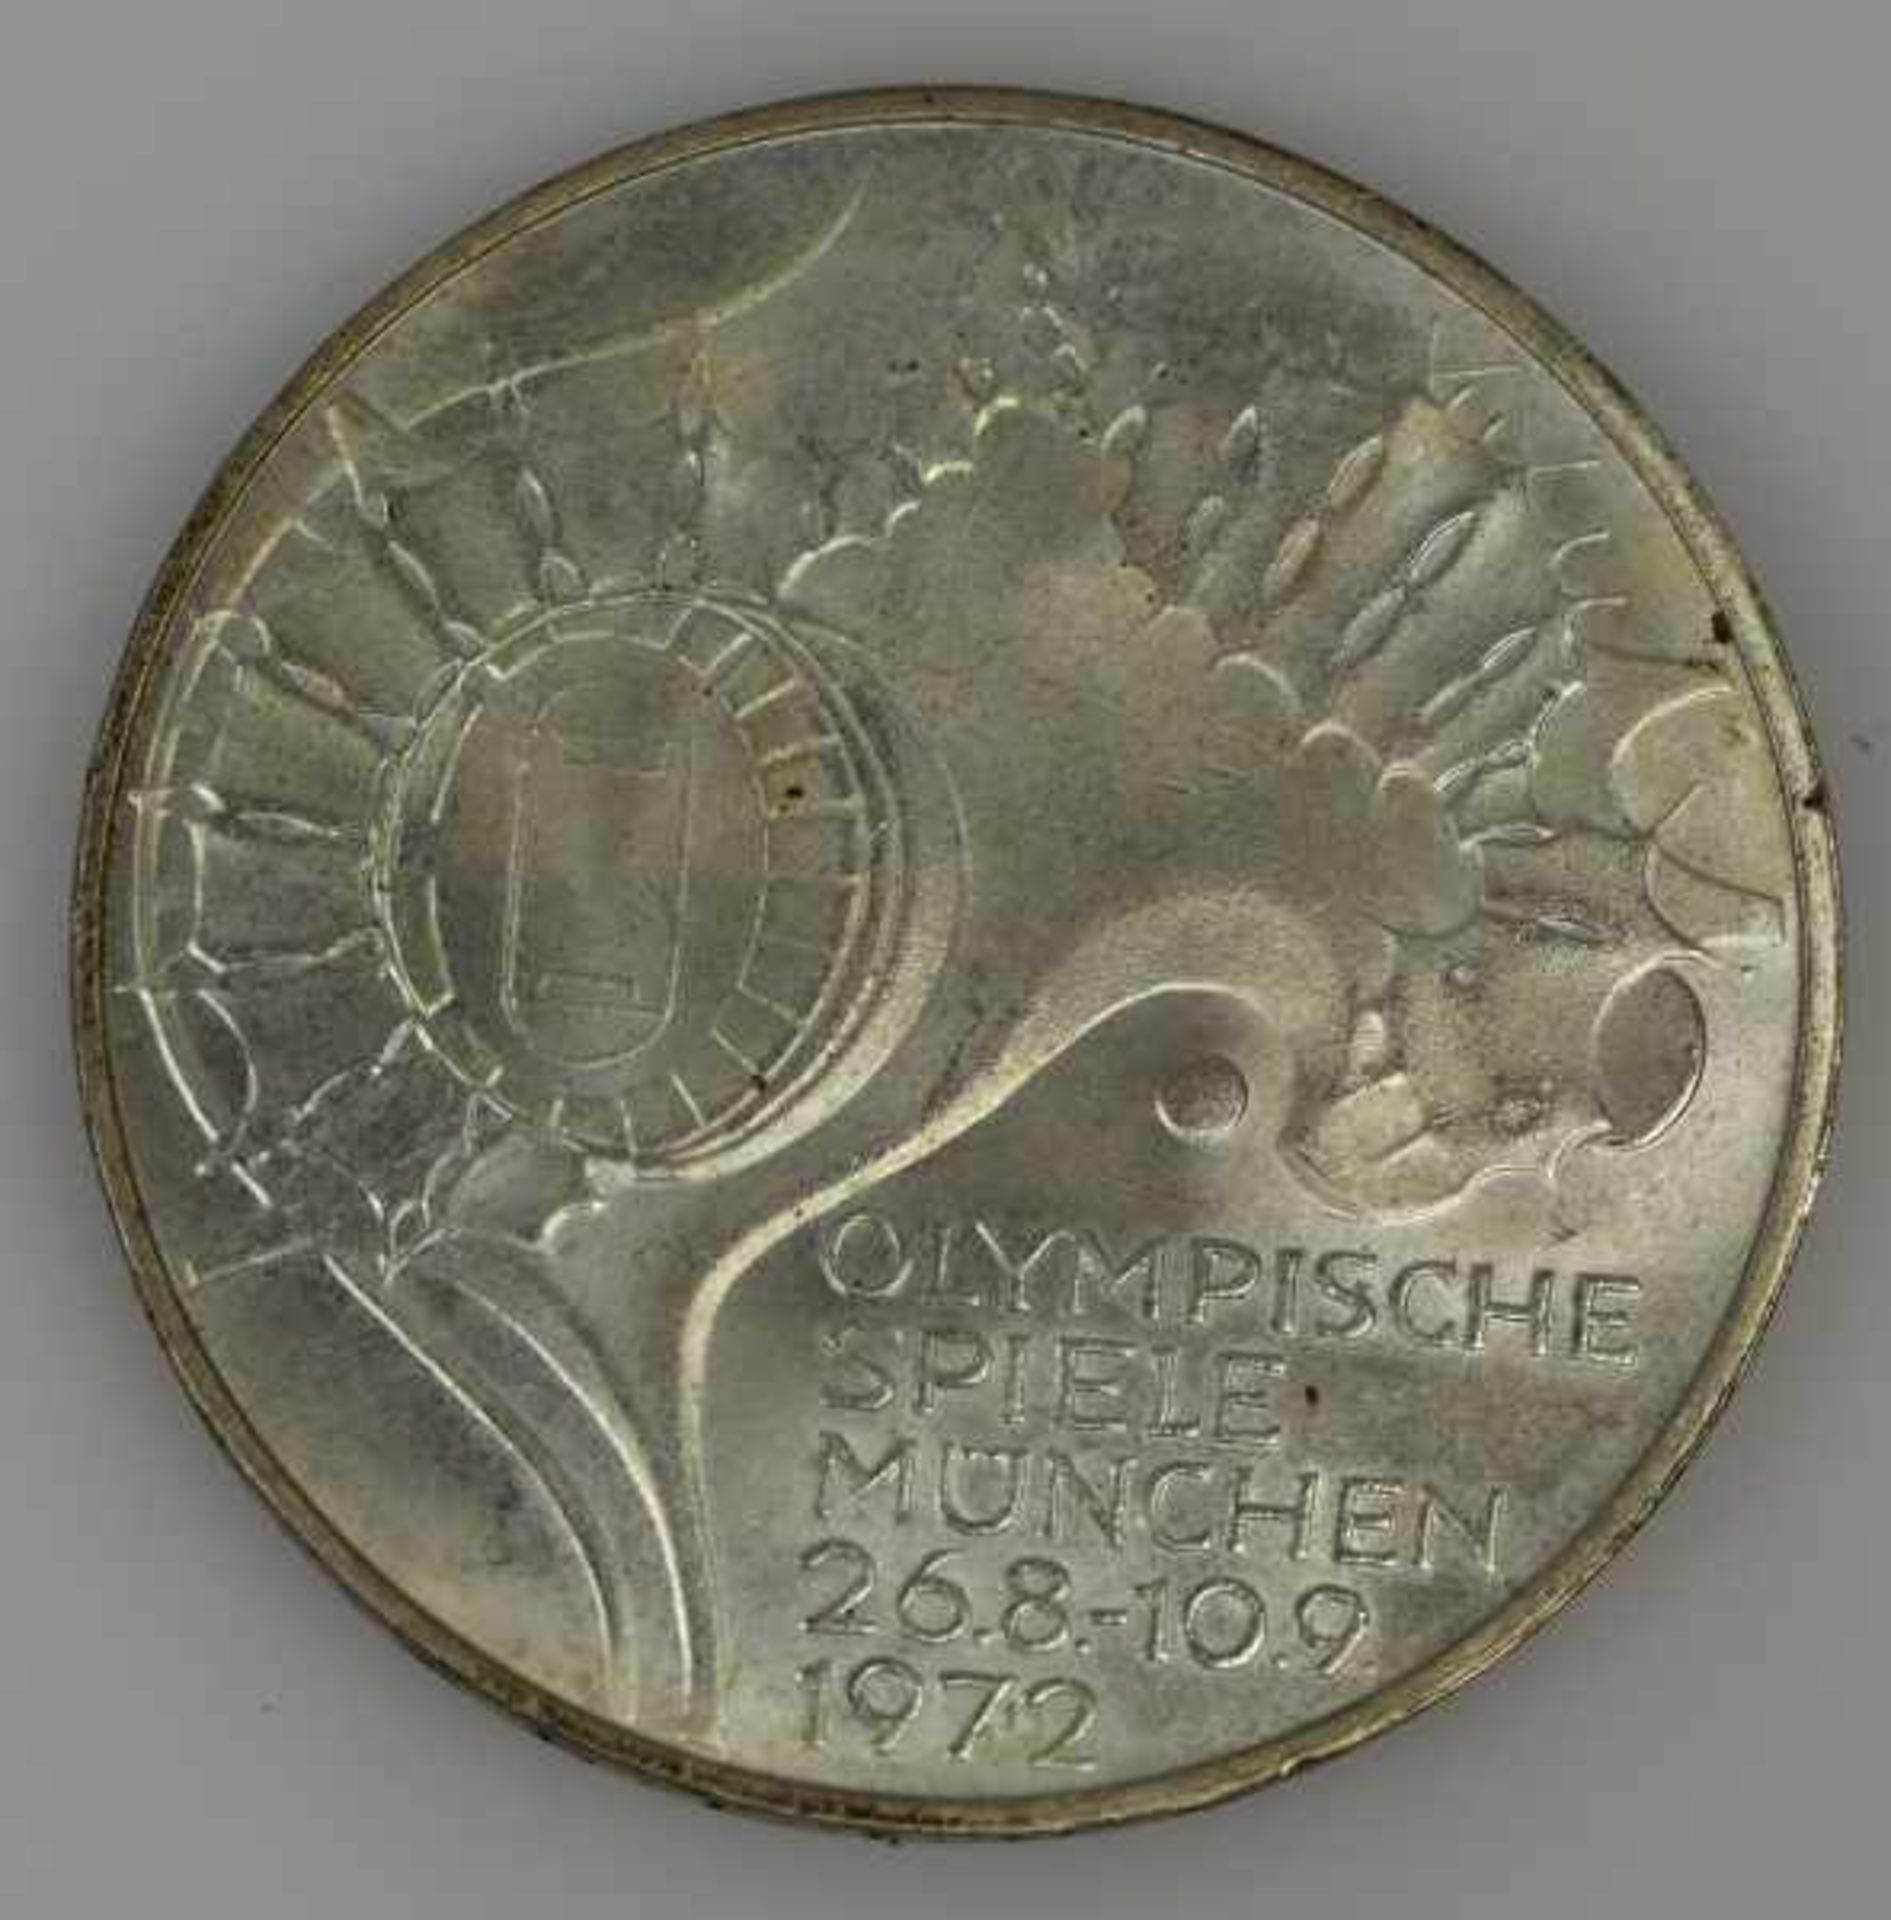 MÜNZEN-LOT 1 Münzanhänger mit Münze 10Fr. Schweiz Nachprägung in Fassung 14ct, 8,3g -1 Goldmünze 200 - Bild 10 aus 17